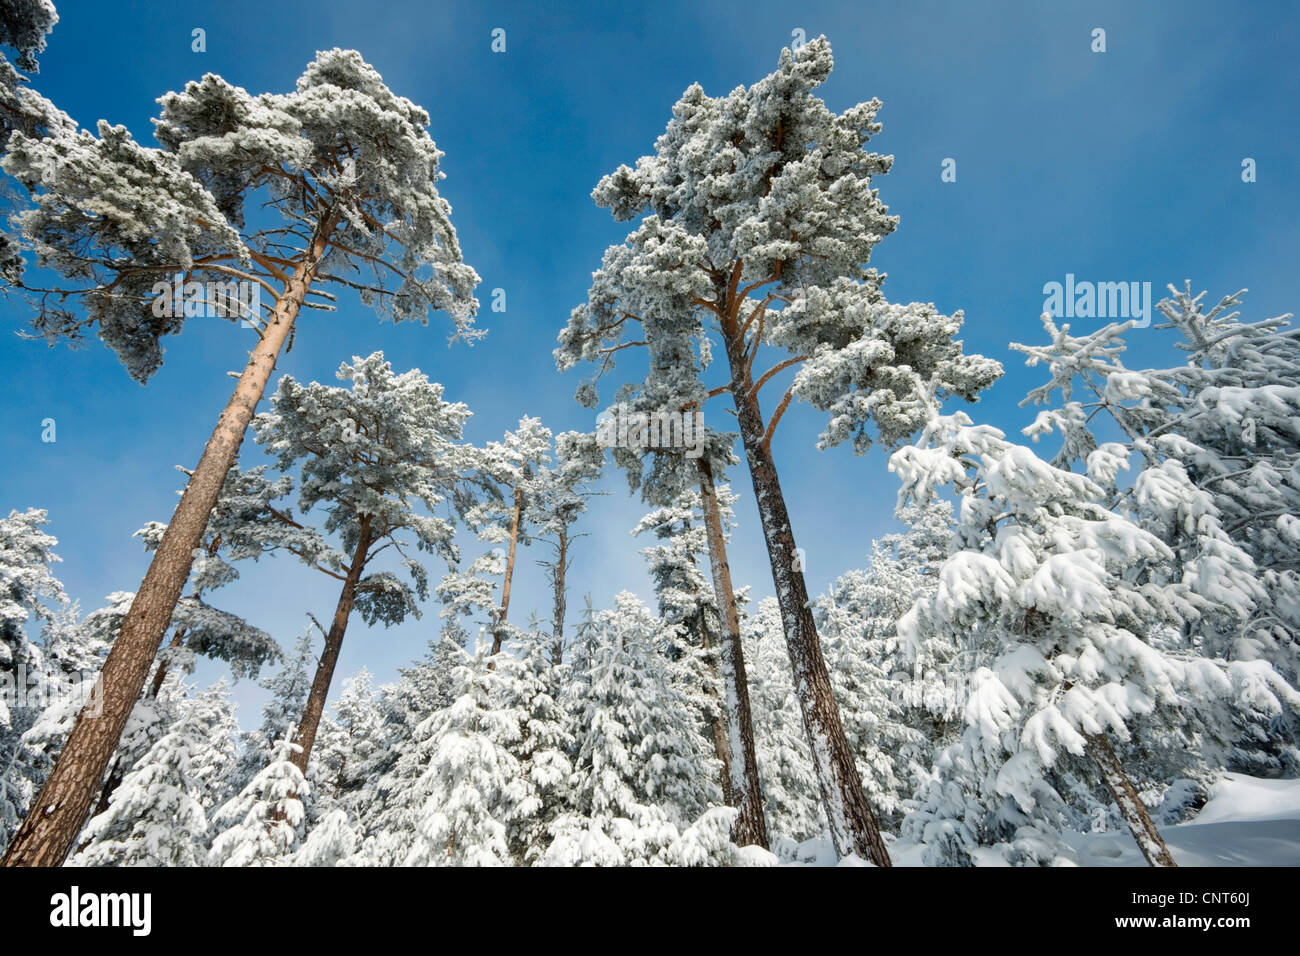 Pin sylvestre, le pin sylvestre (Pinus sylvestris), forêt enneigée, Espagne, Aragon, Sierra de Gudar Banque D'Images